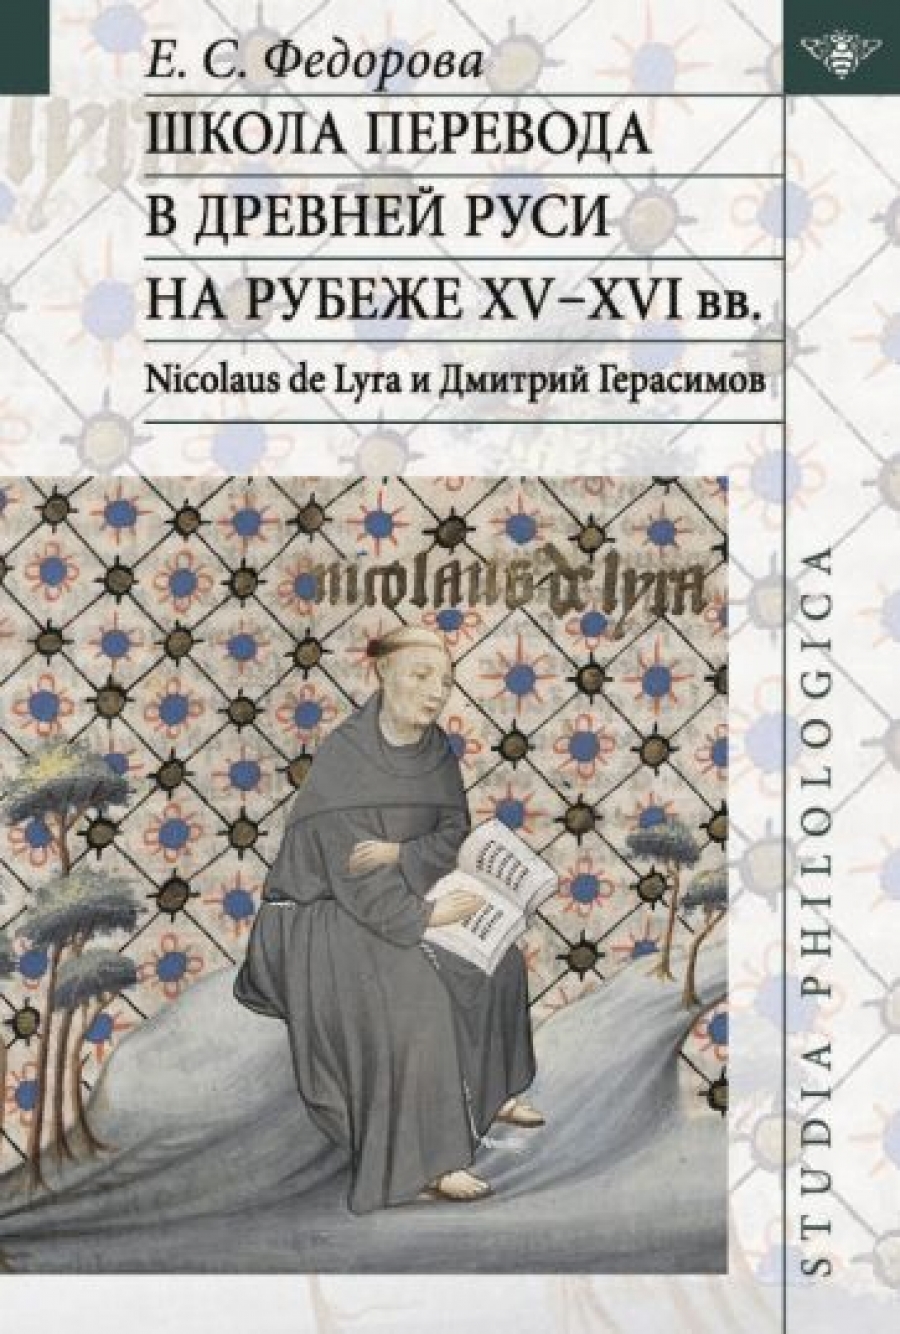           XV-XVI . Nicolaus de Lyra    